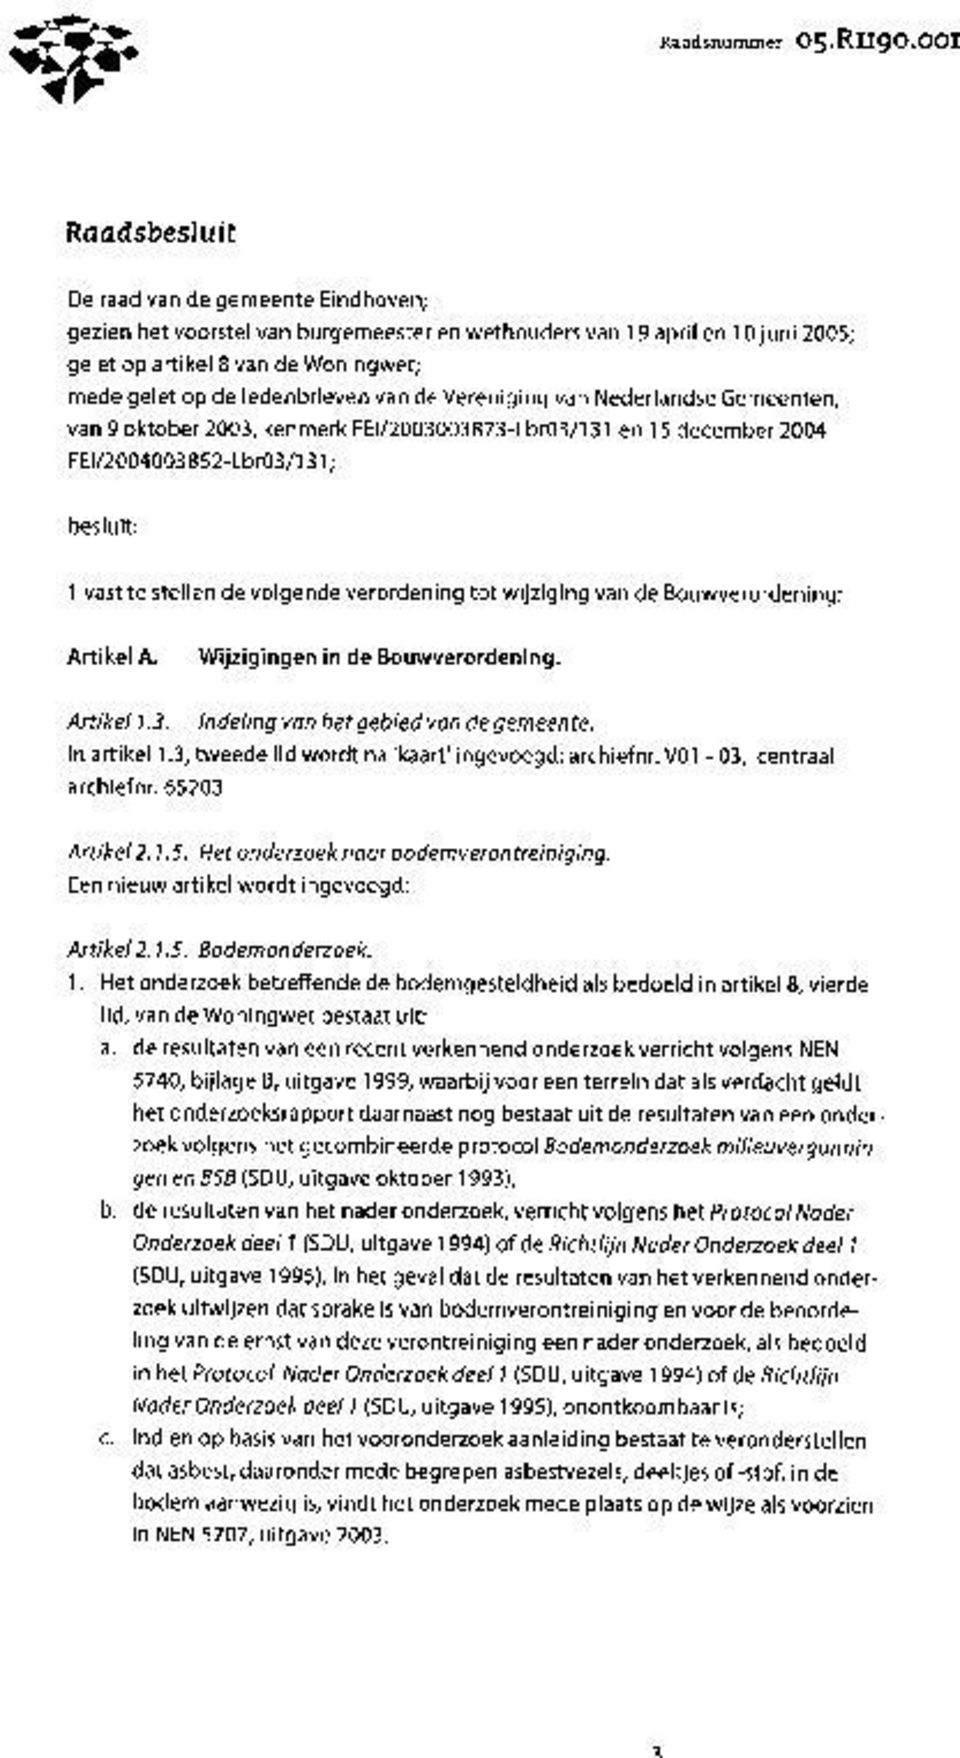 van de Vereniging van Nederlandse Gemeenten, van 9 oktober 2003, kenmerk FEI/2003003873-Lbr03/131 en 15 december 2004 F El/2004003852-Lbr03/131; besluit: 1 vast te stellen de volgende verordening tot